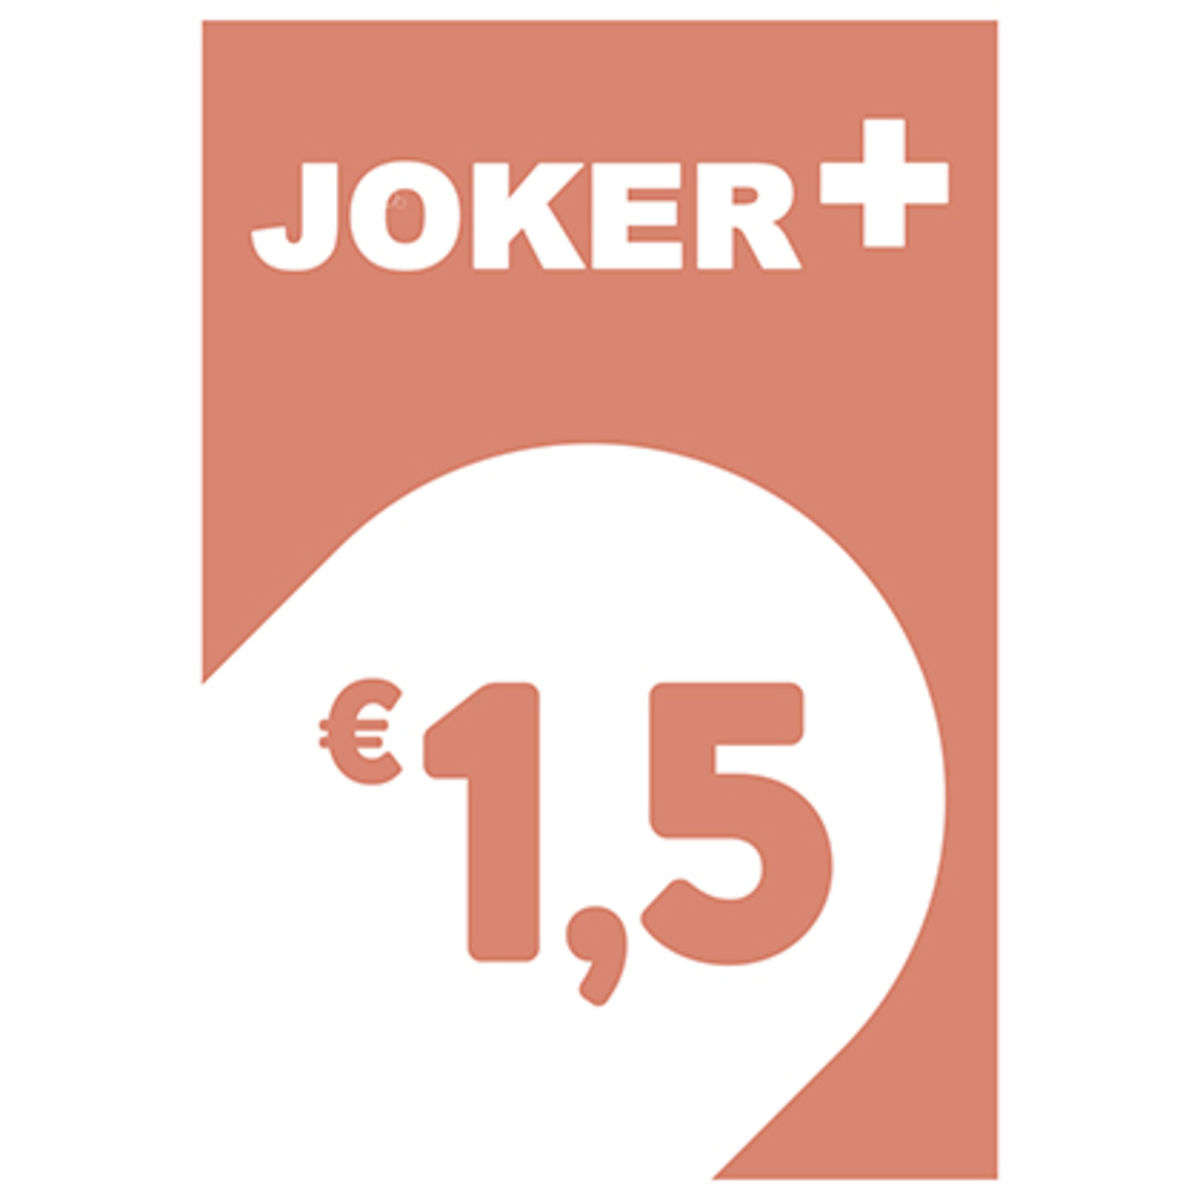 Joker+ 1,5 €